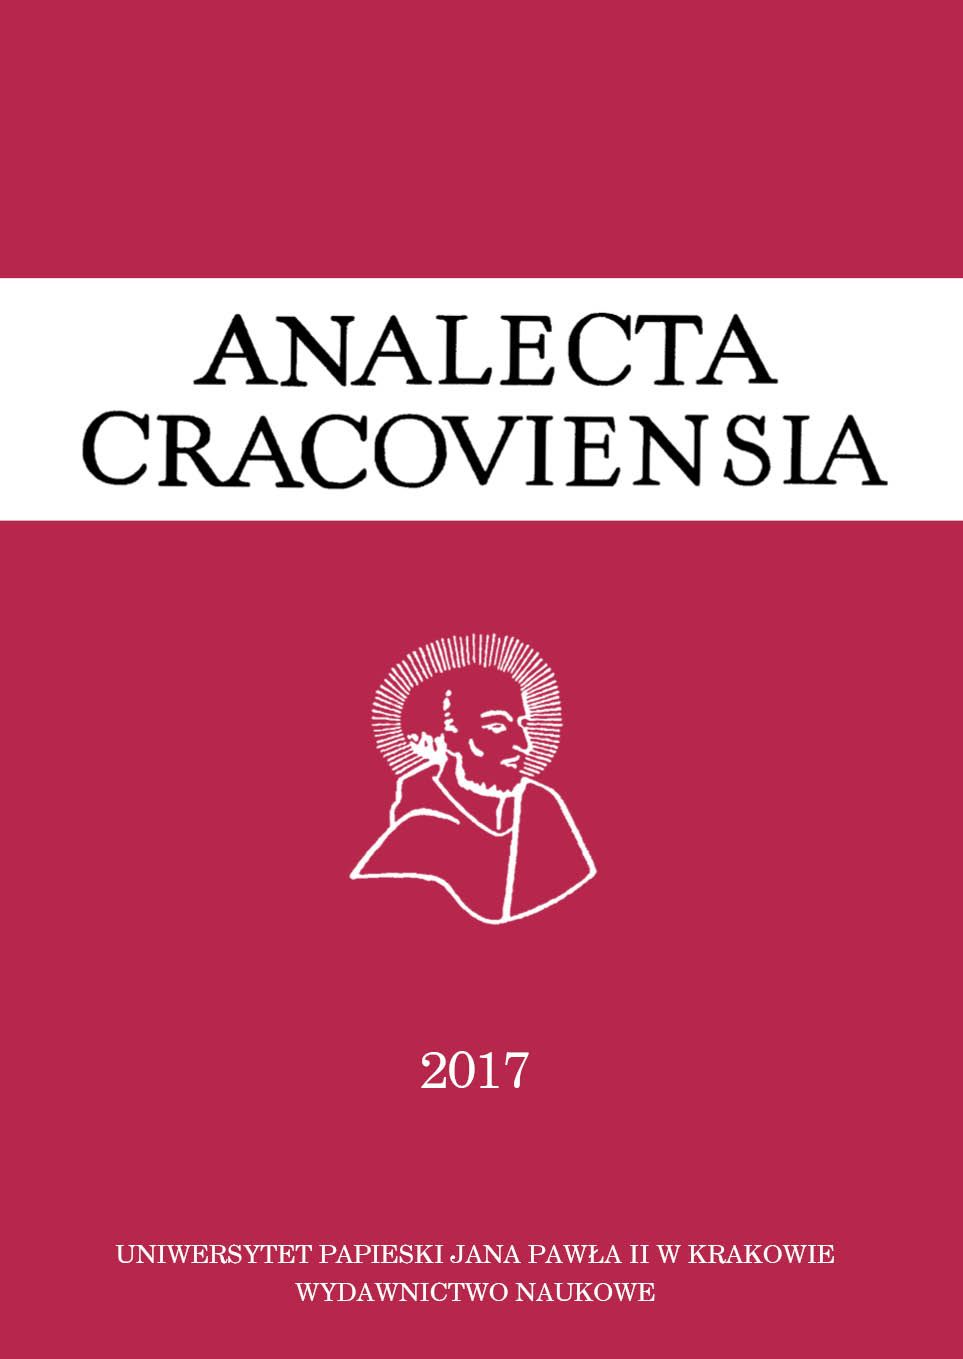 Analecta Cracoviensia. Czasopismo Uniwersytetu Papieskiego Jana Pawła II w Krakowie